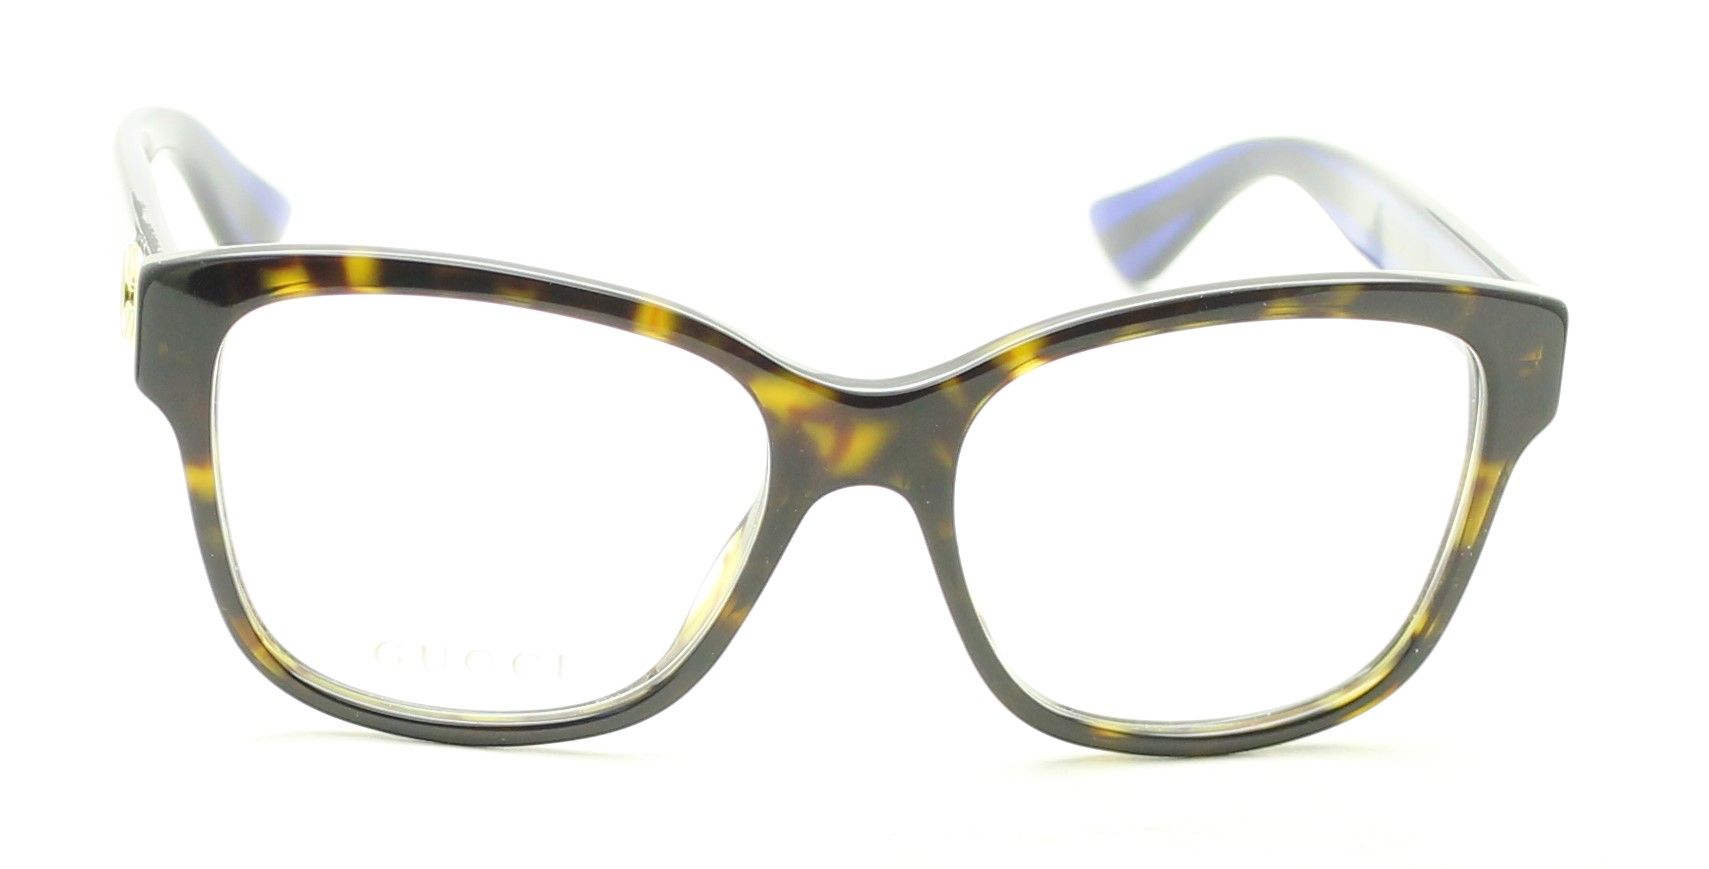 GUCCI GG 0038O 003 Eyewear FRAMES NEW Glasses RX Optical Eyeglasses ...